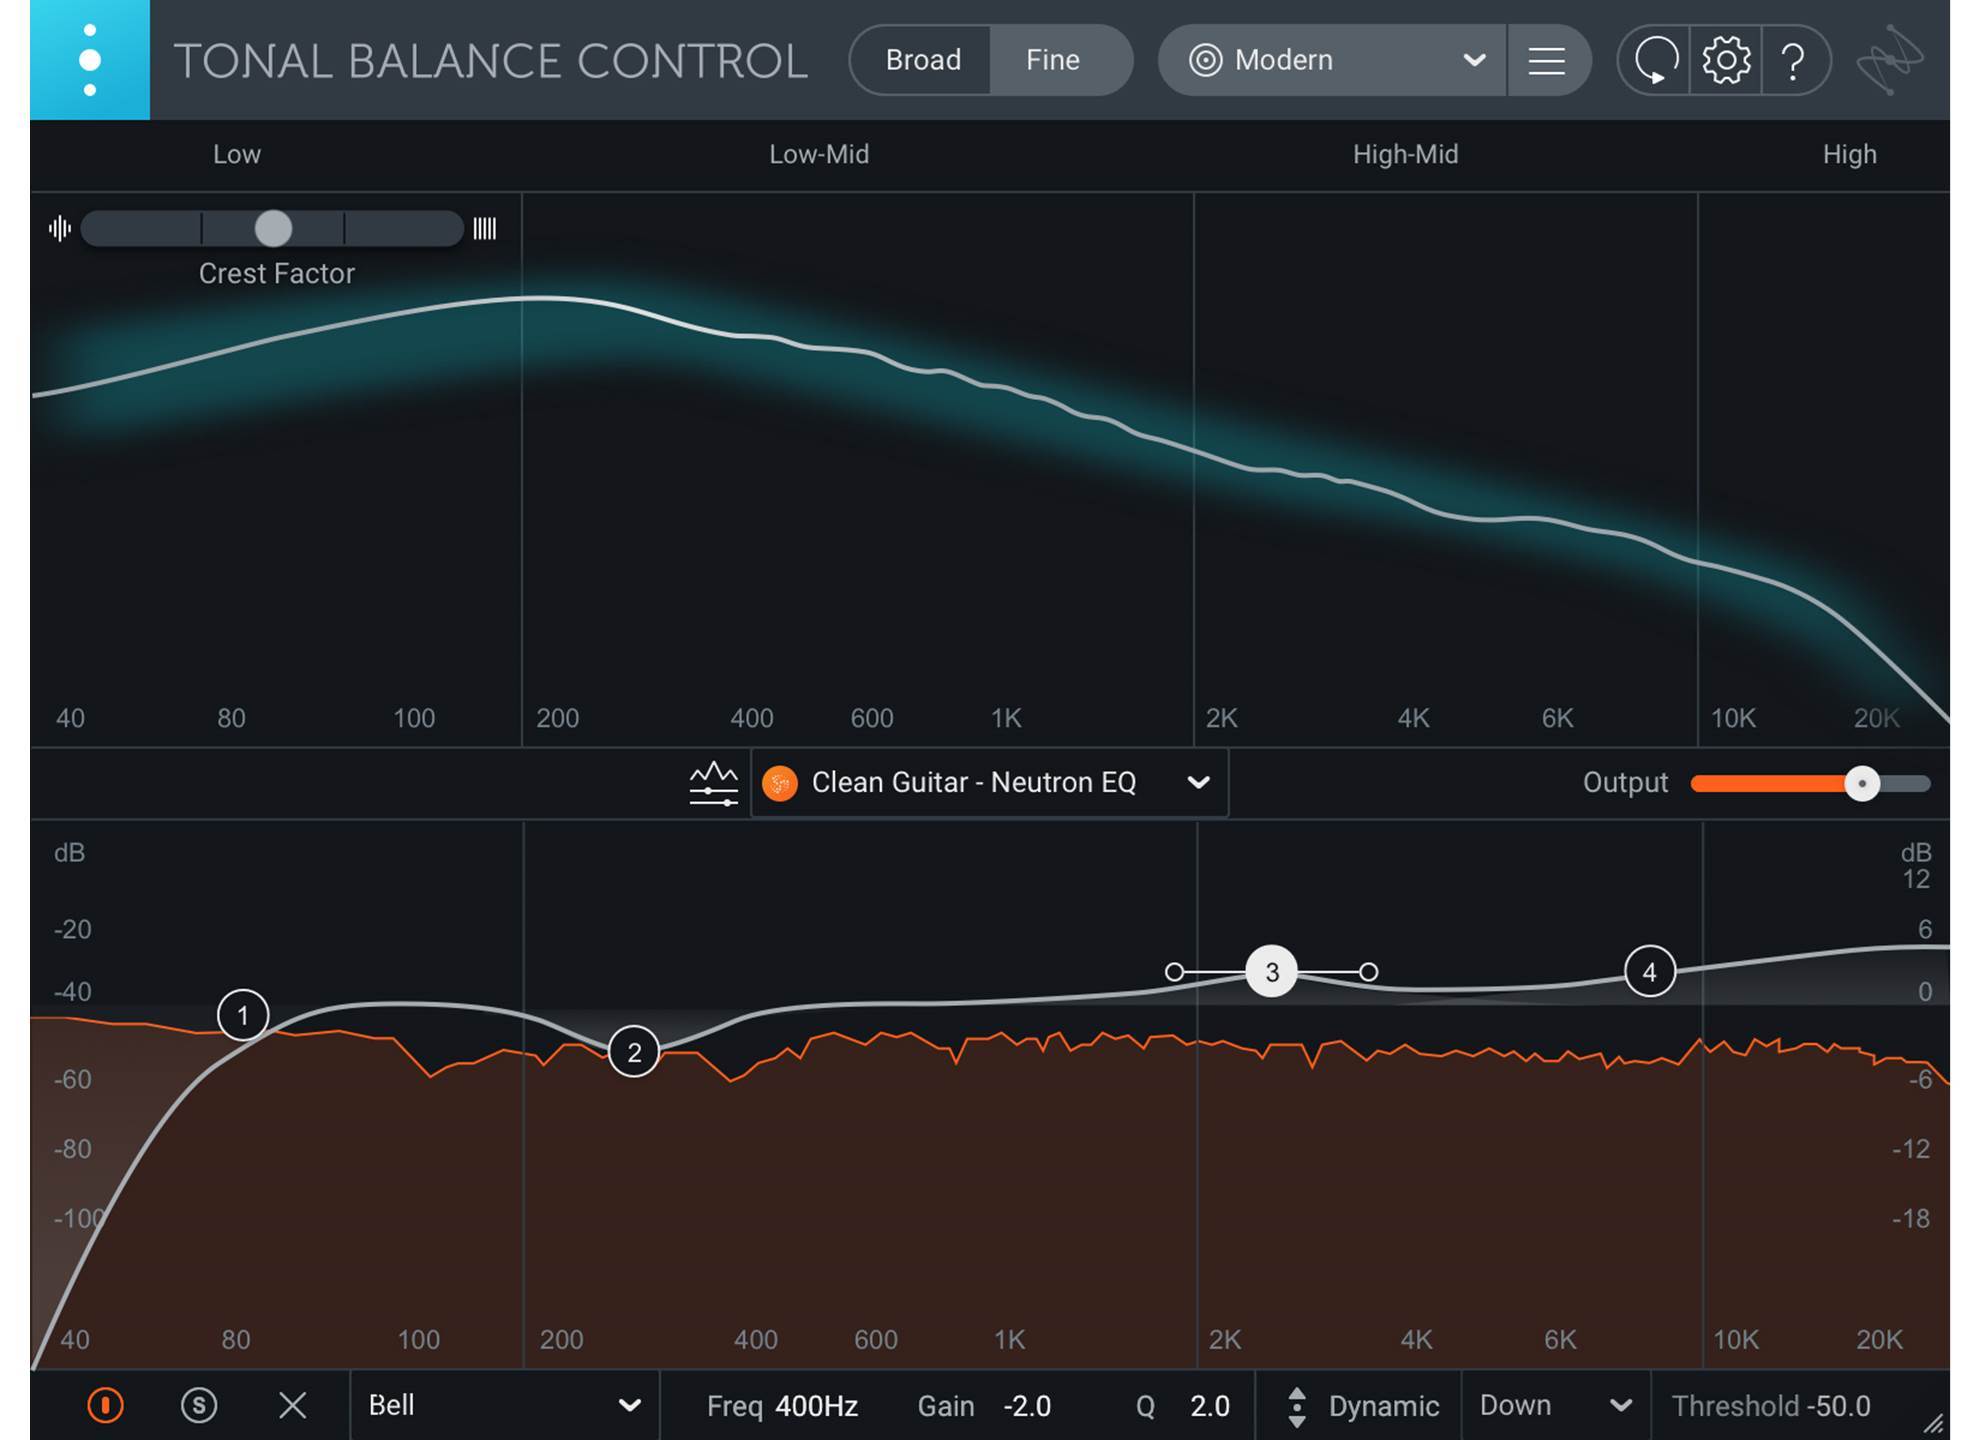 tonal balance control target curves